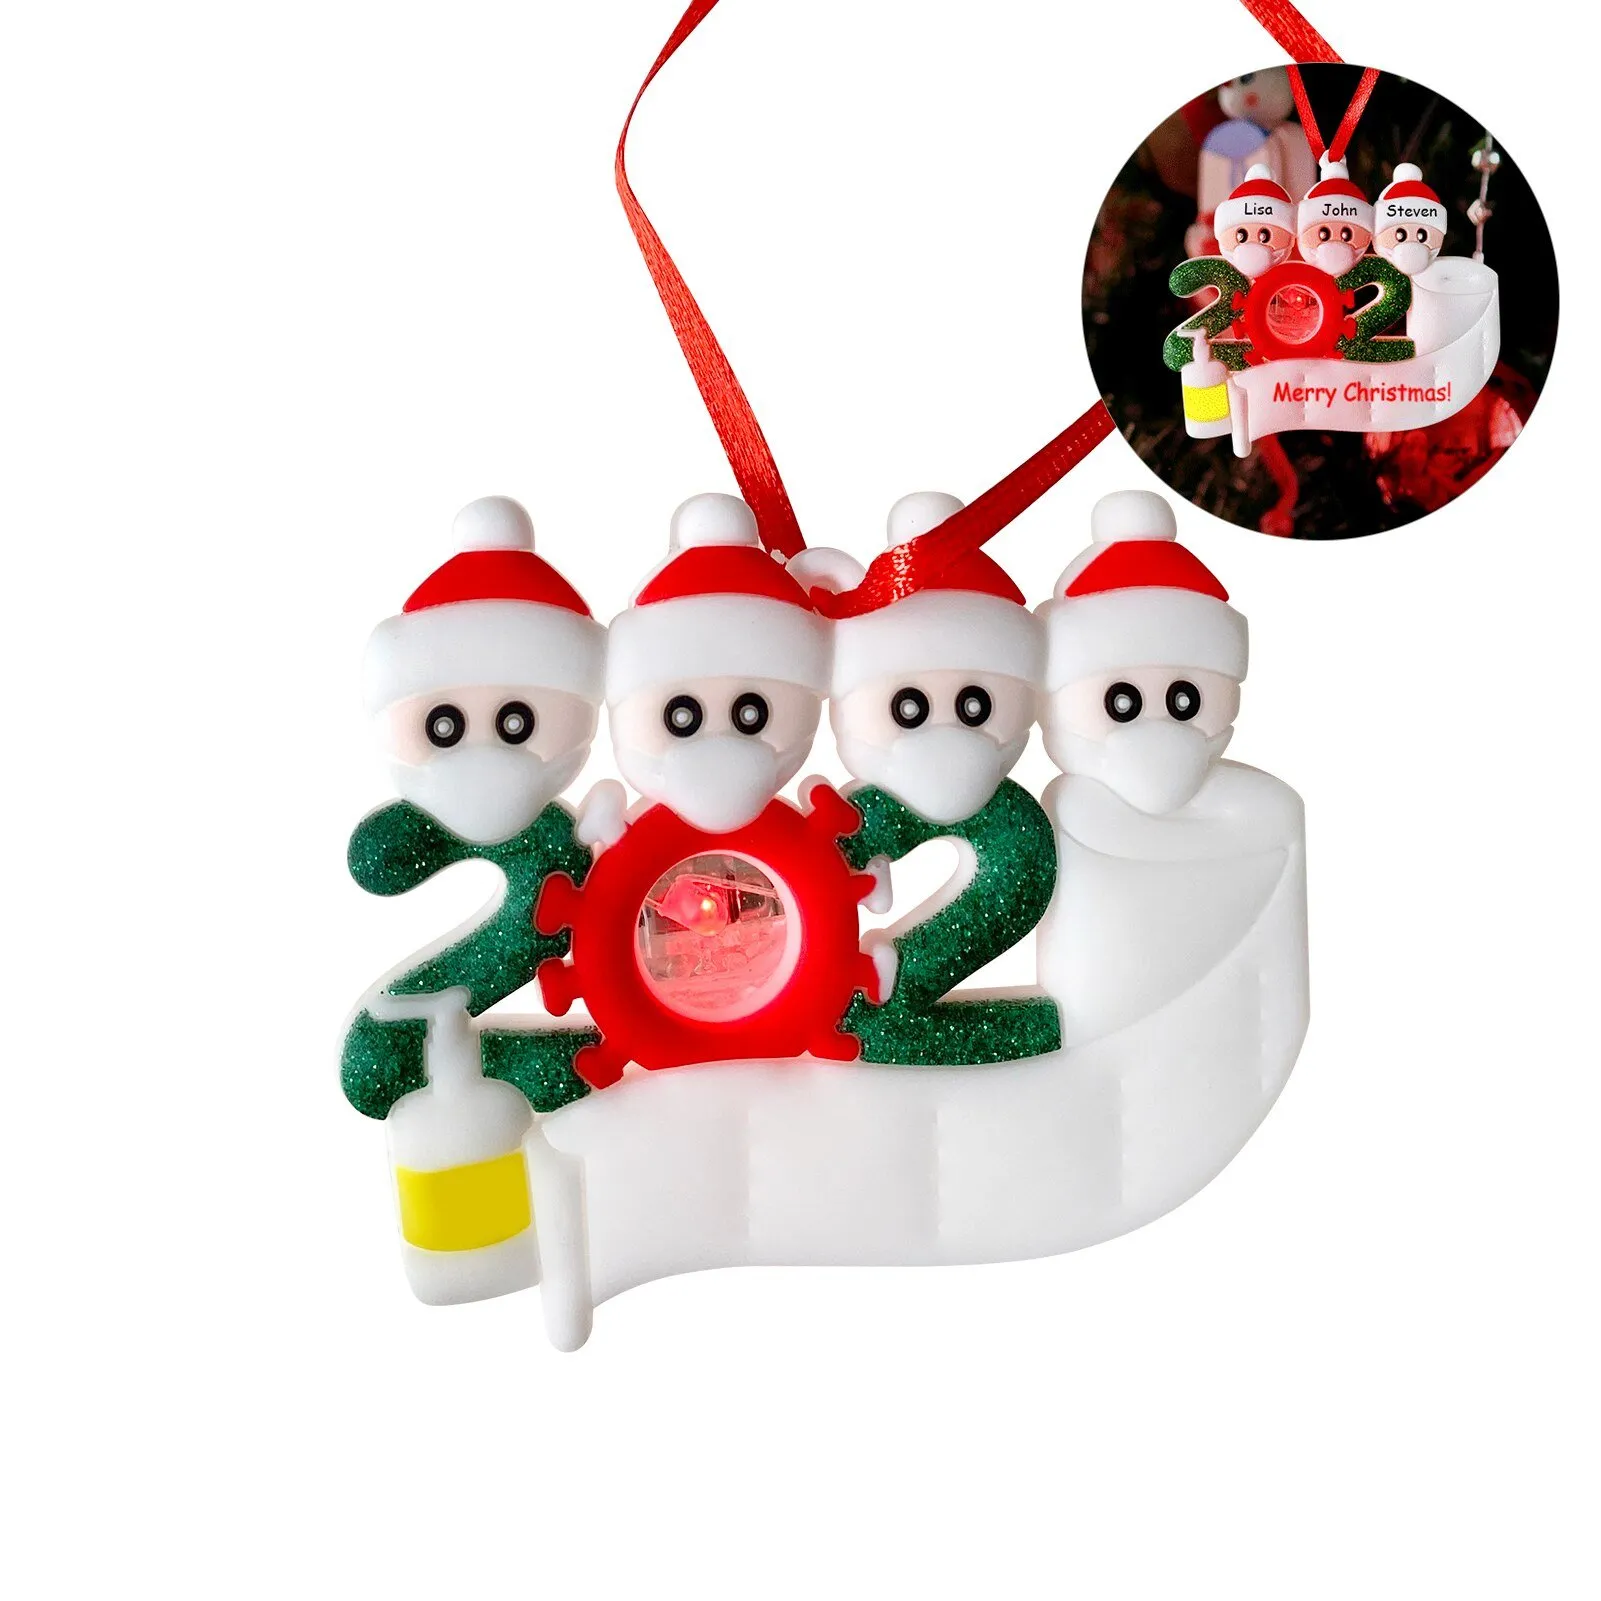 Nome dell'albero di Natale 2020 Ornamento con luci lampeggianti Decorazioni natalizie Regali personalizzati per i membri della famiglia per Natale